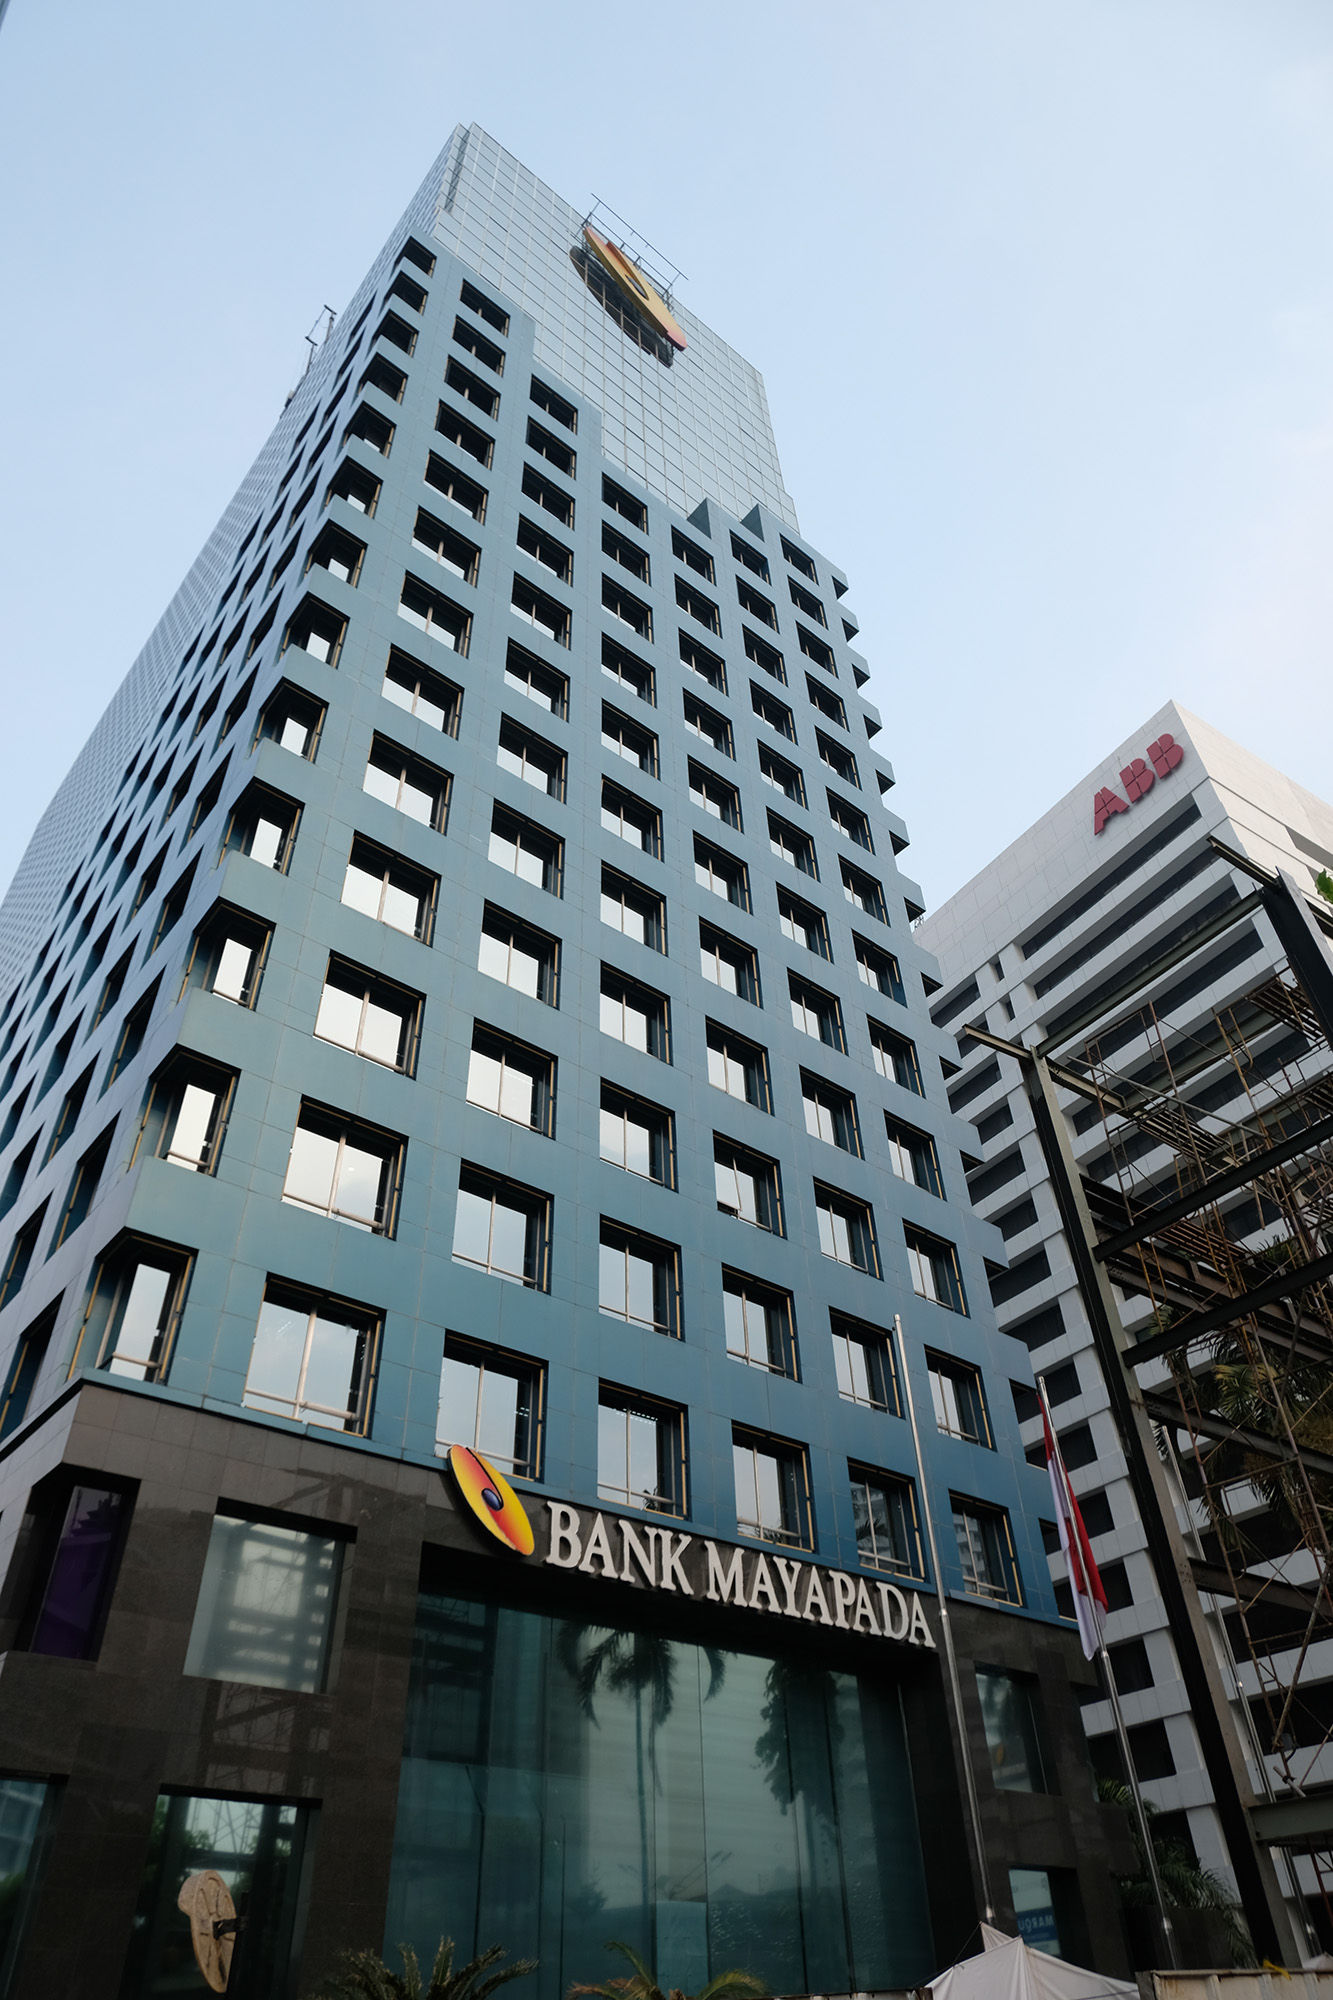 Gedung Bank Mayapada di kawasan Jalan Sudirman, Jakarta. Foto: Ismail Pohan/TrenAsia